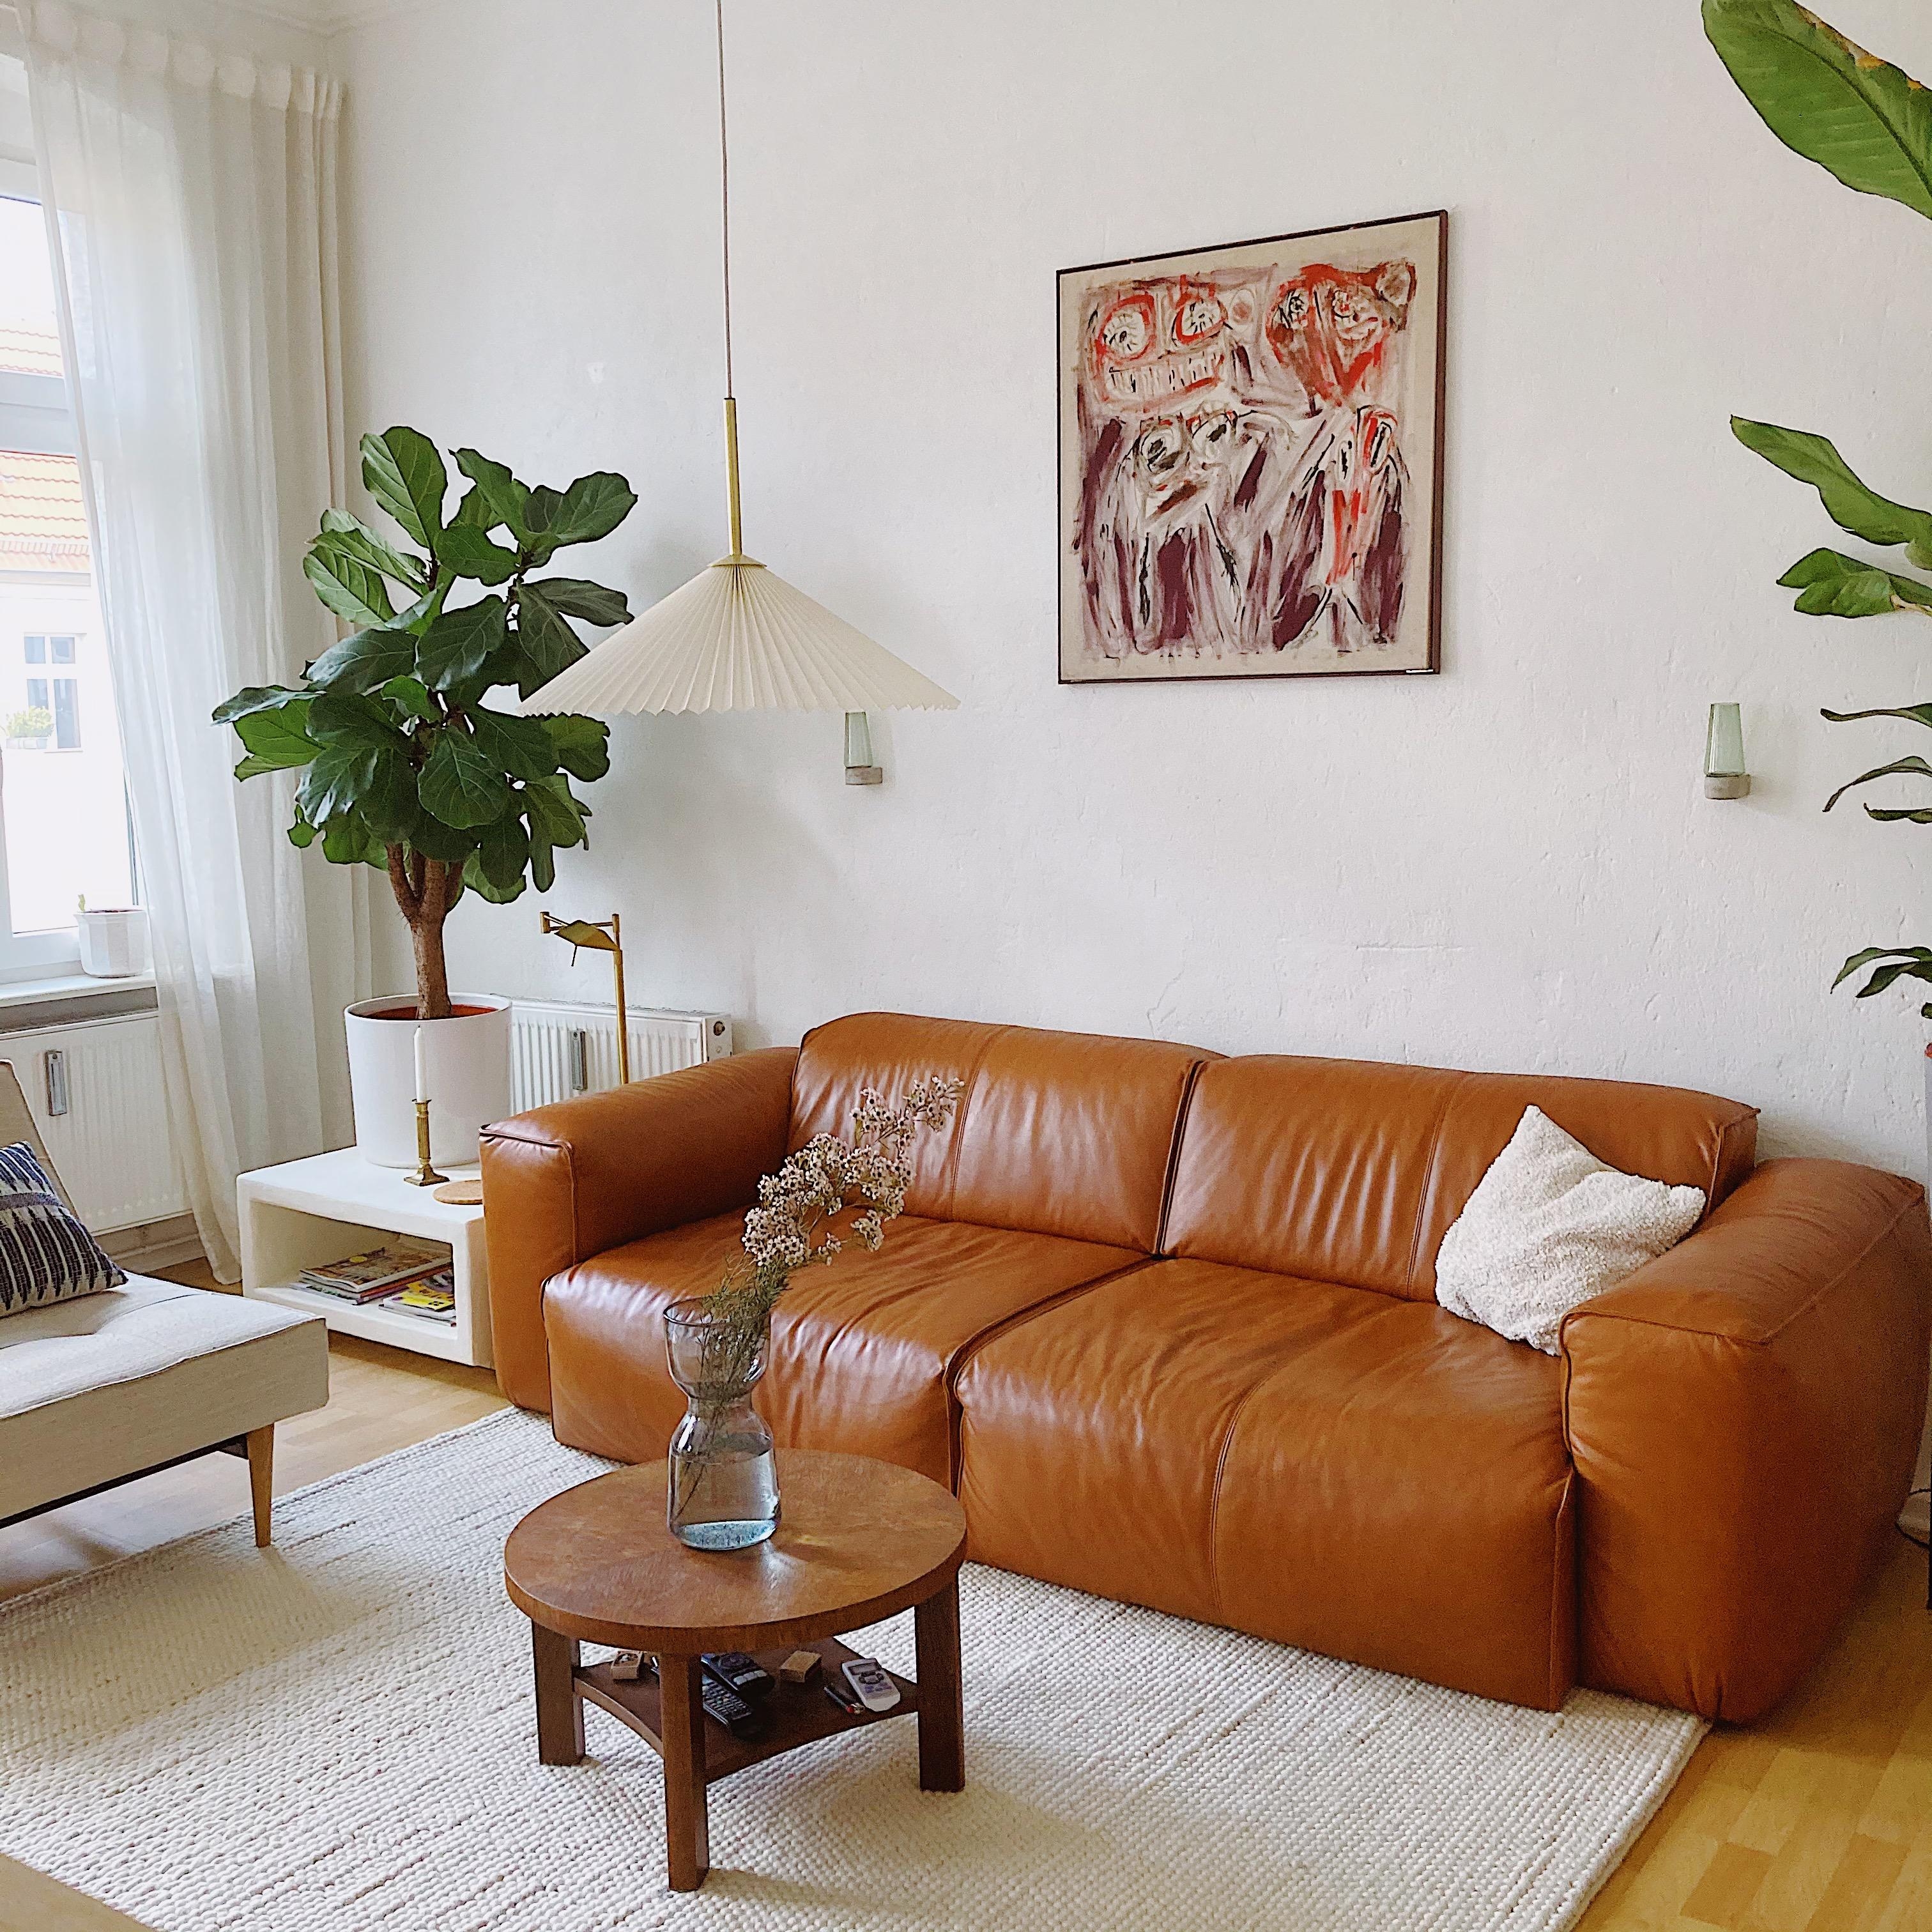 Sonntag. Grauer Himmel. Man findet mich hier 👋🏼
#couch #livingroom #cozy #lvgrm #wohnzimmer